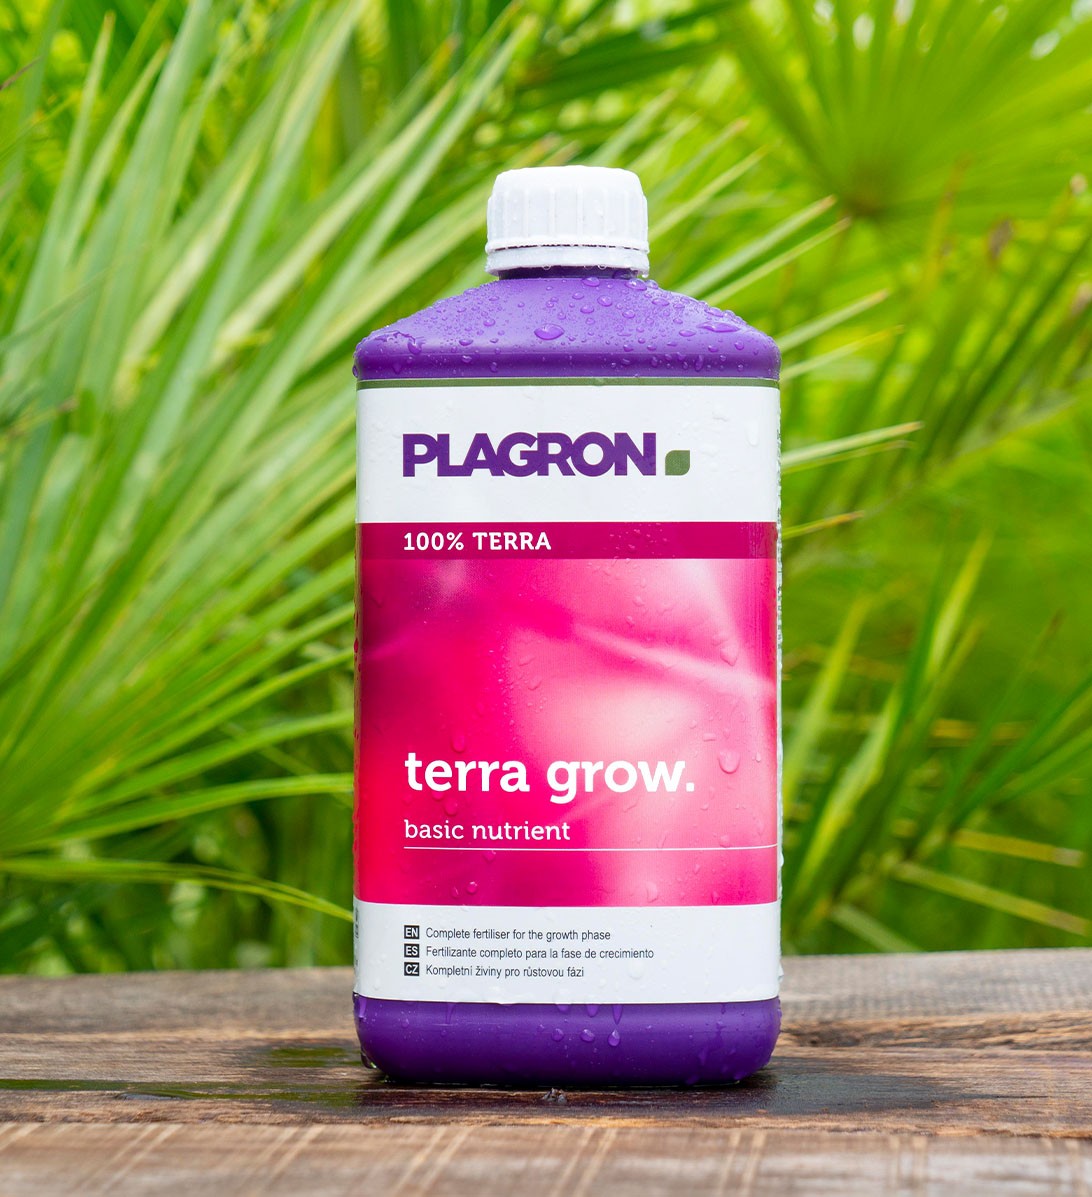 Terra Grow base nutrient for indoor growing